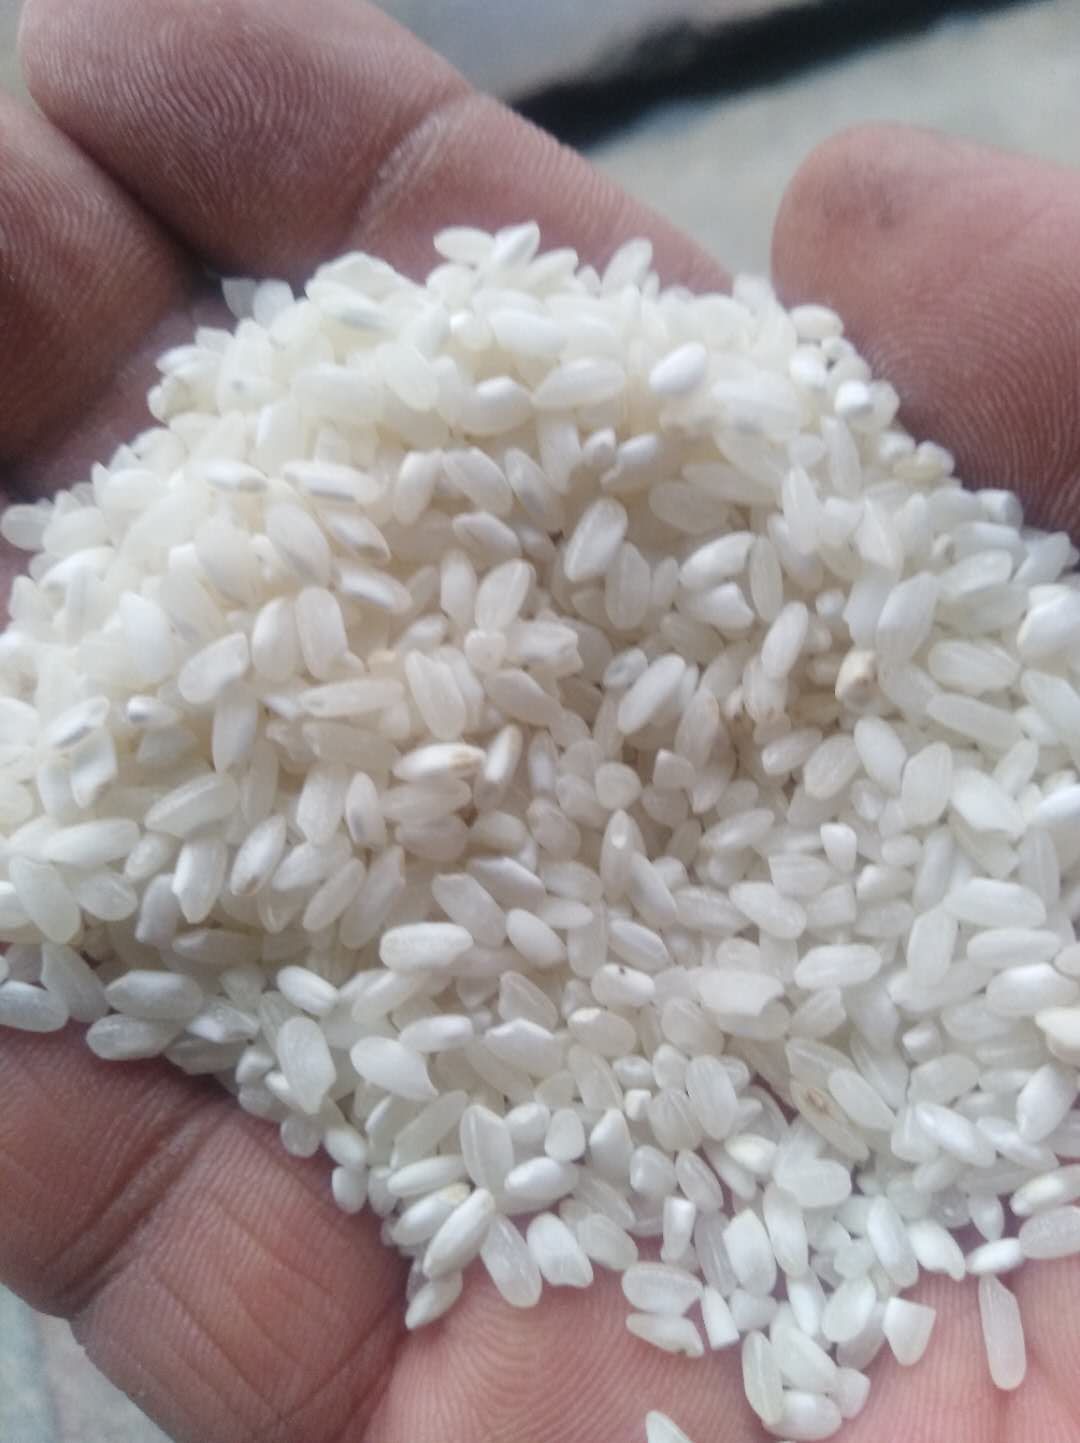 桂朝大米 优质桂朝米,用于做米粉,米皮子 168 元/斤